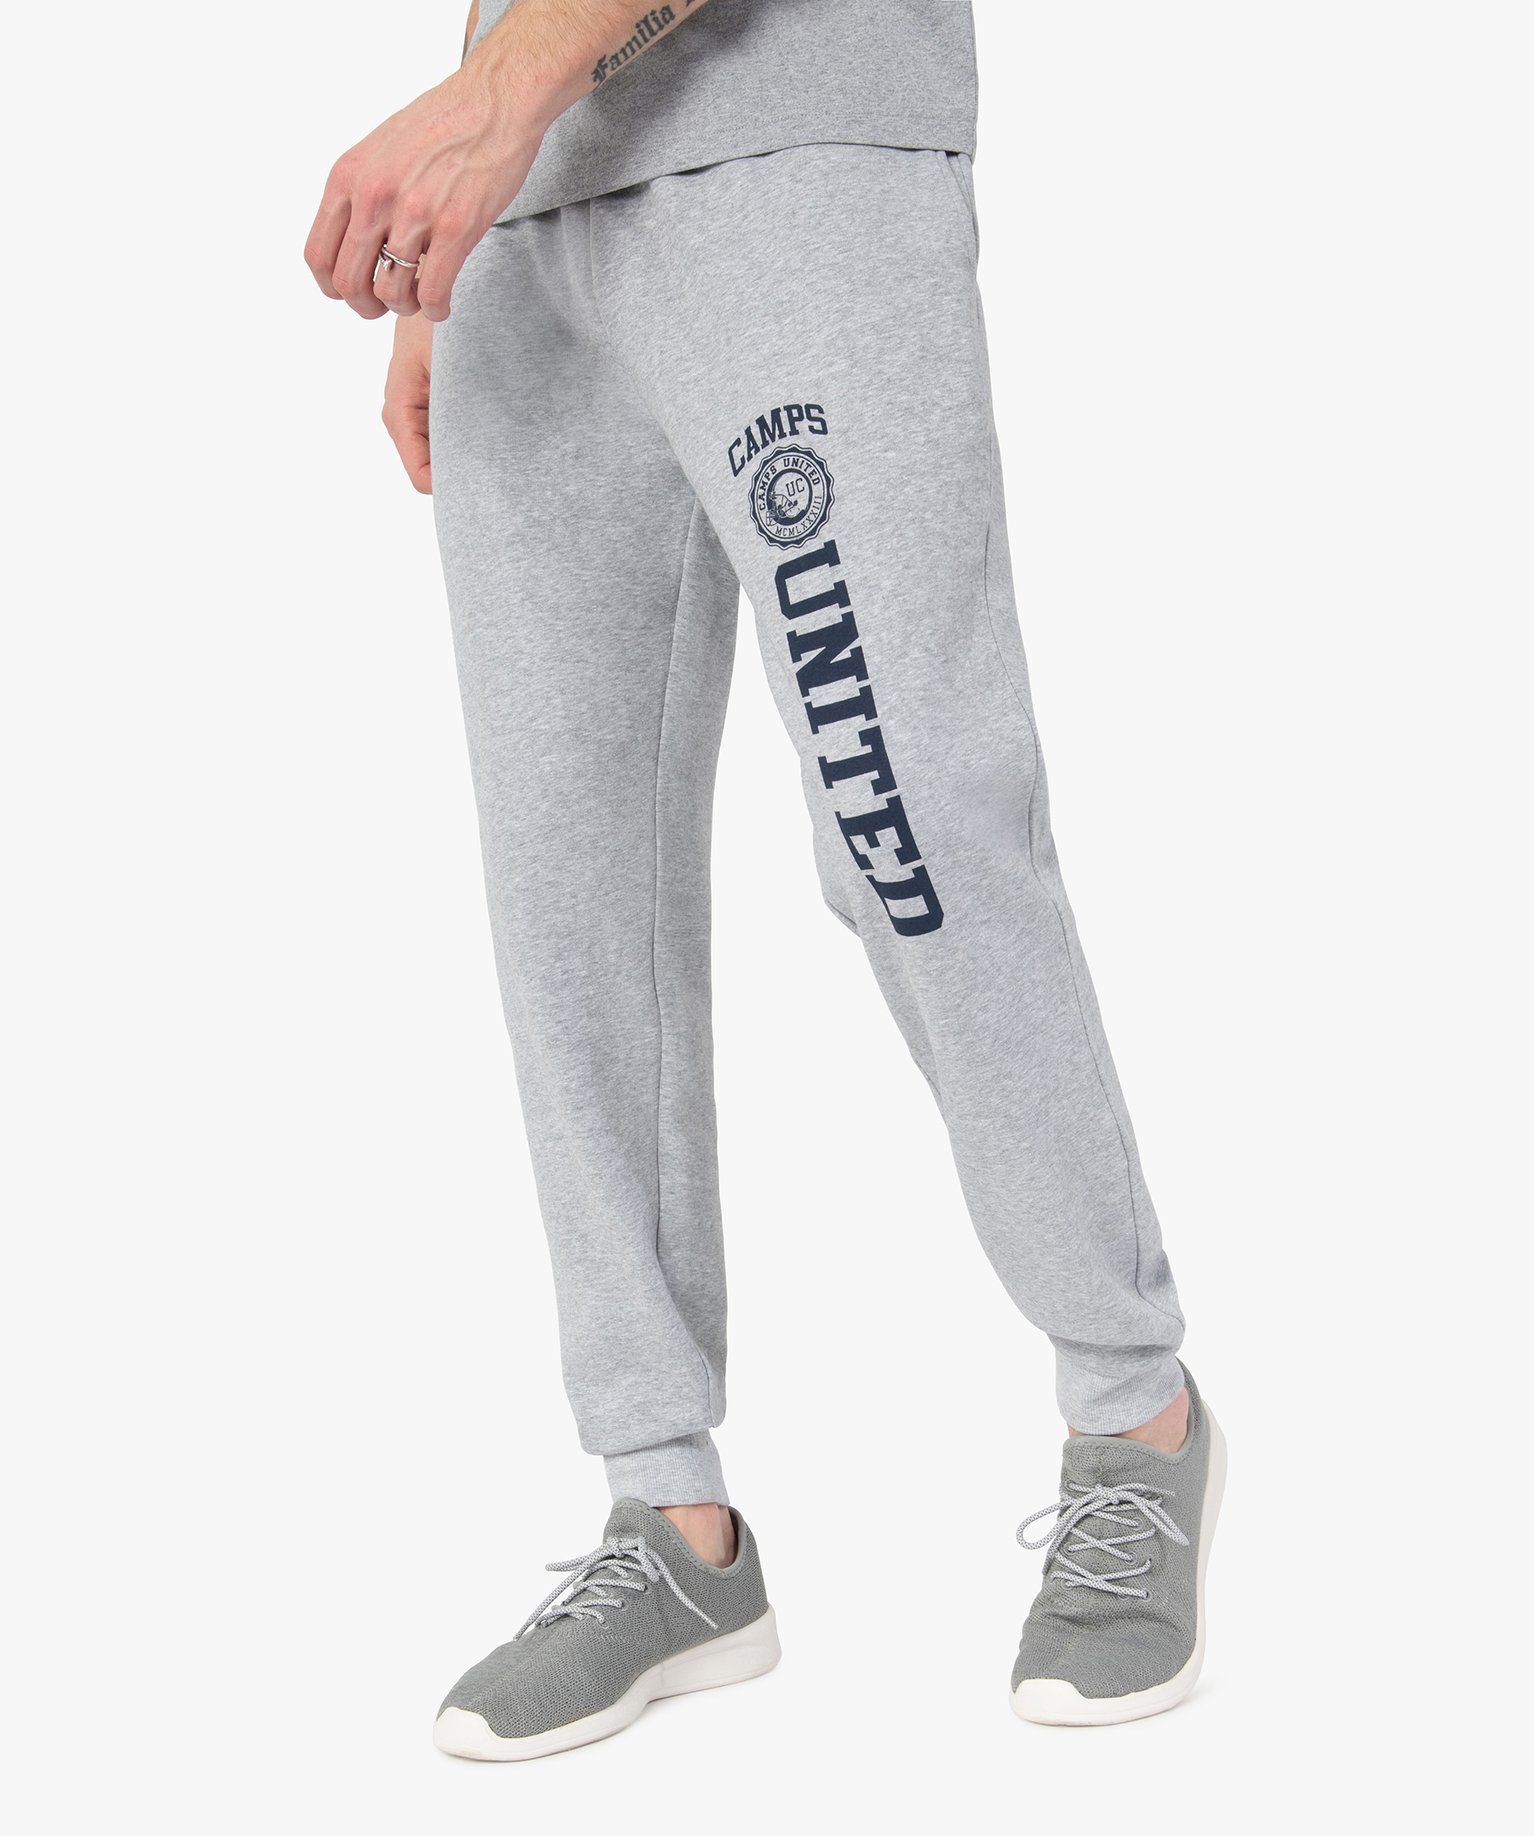 pantalon de jogging homme avec inscription – camps united gris homme